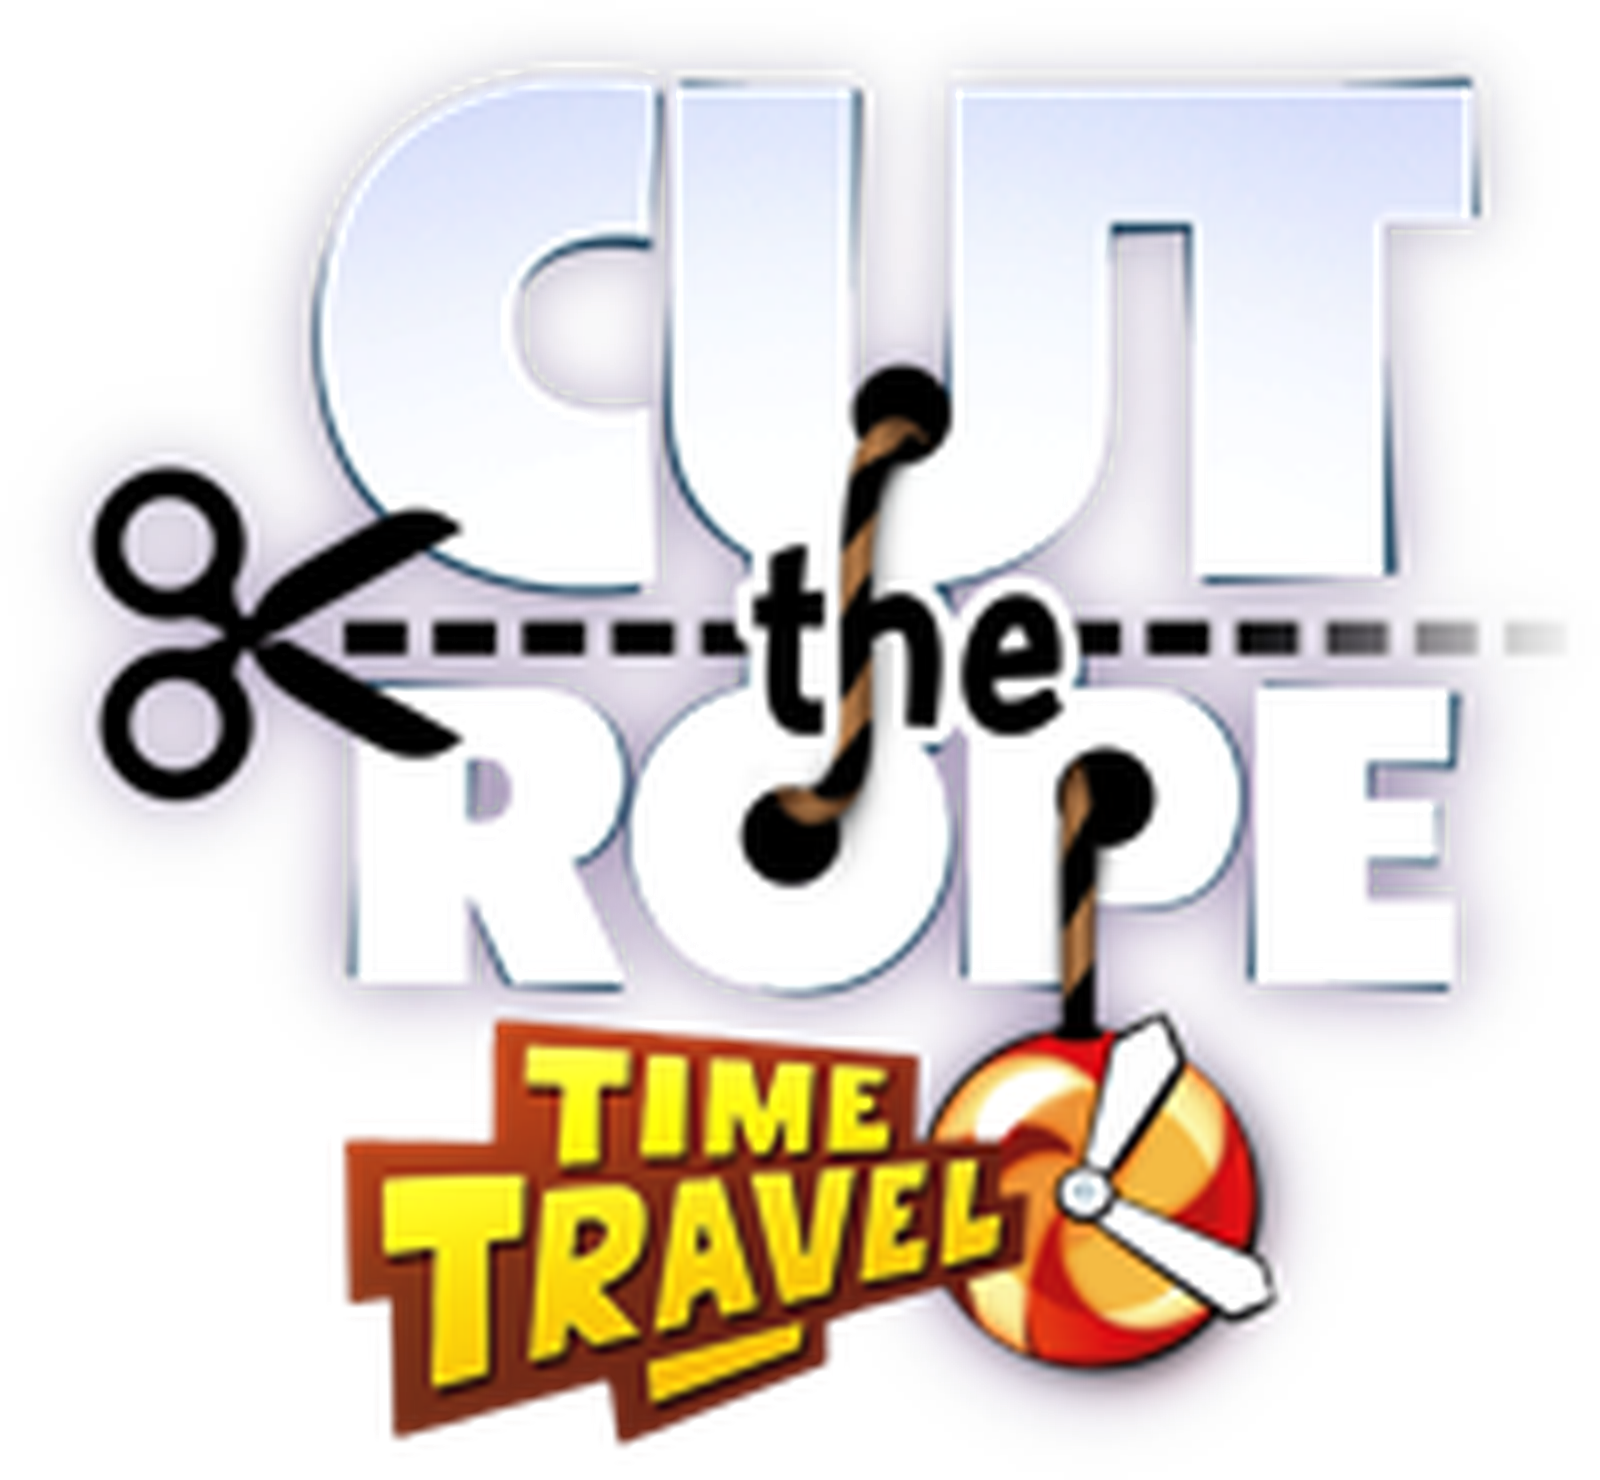 Cut the Rope 3. ZeptoLab